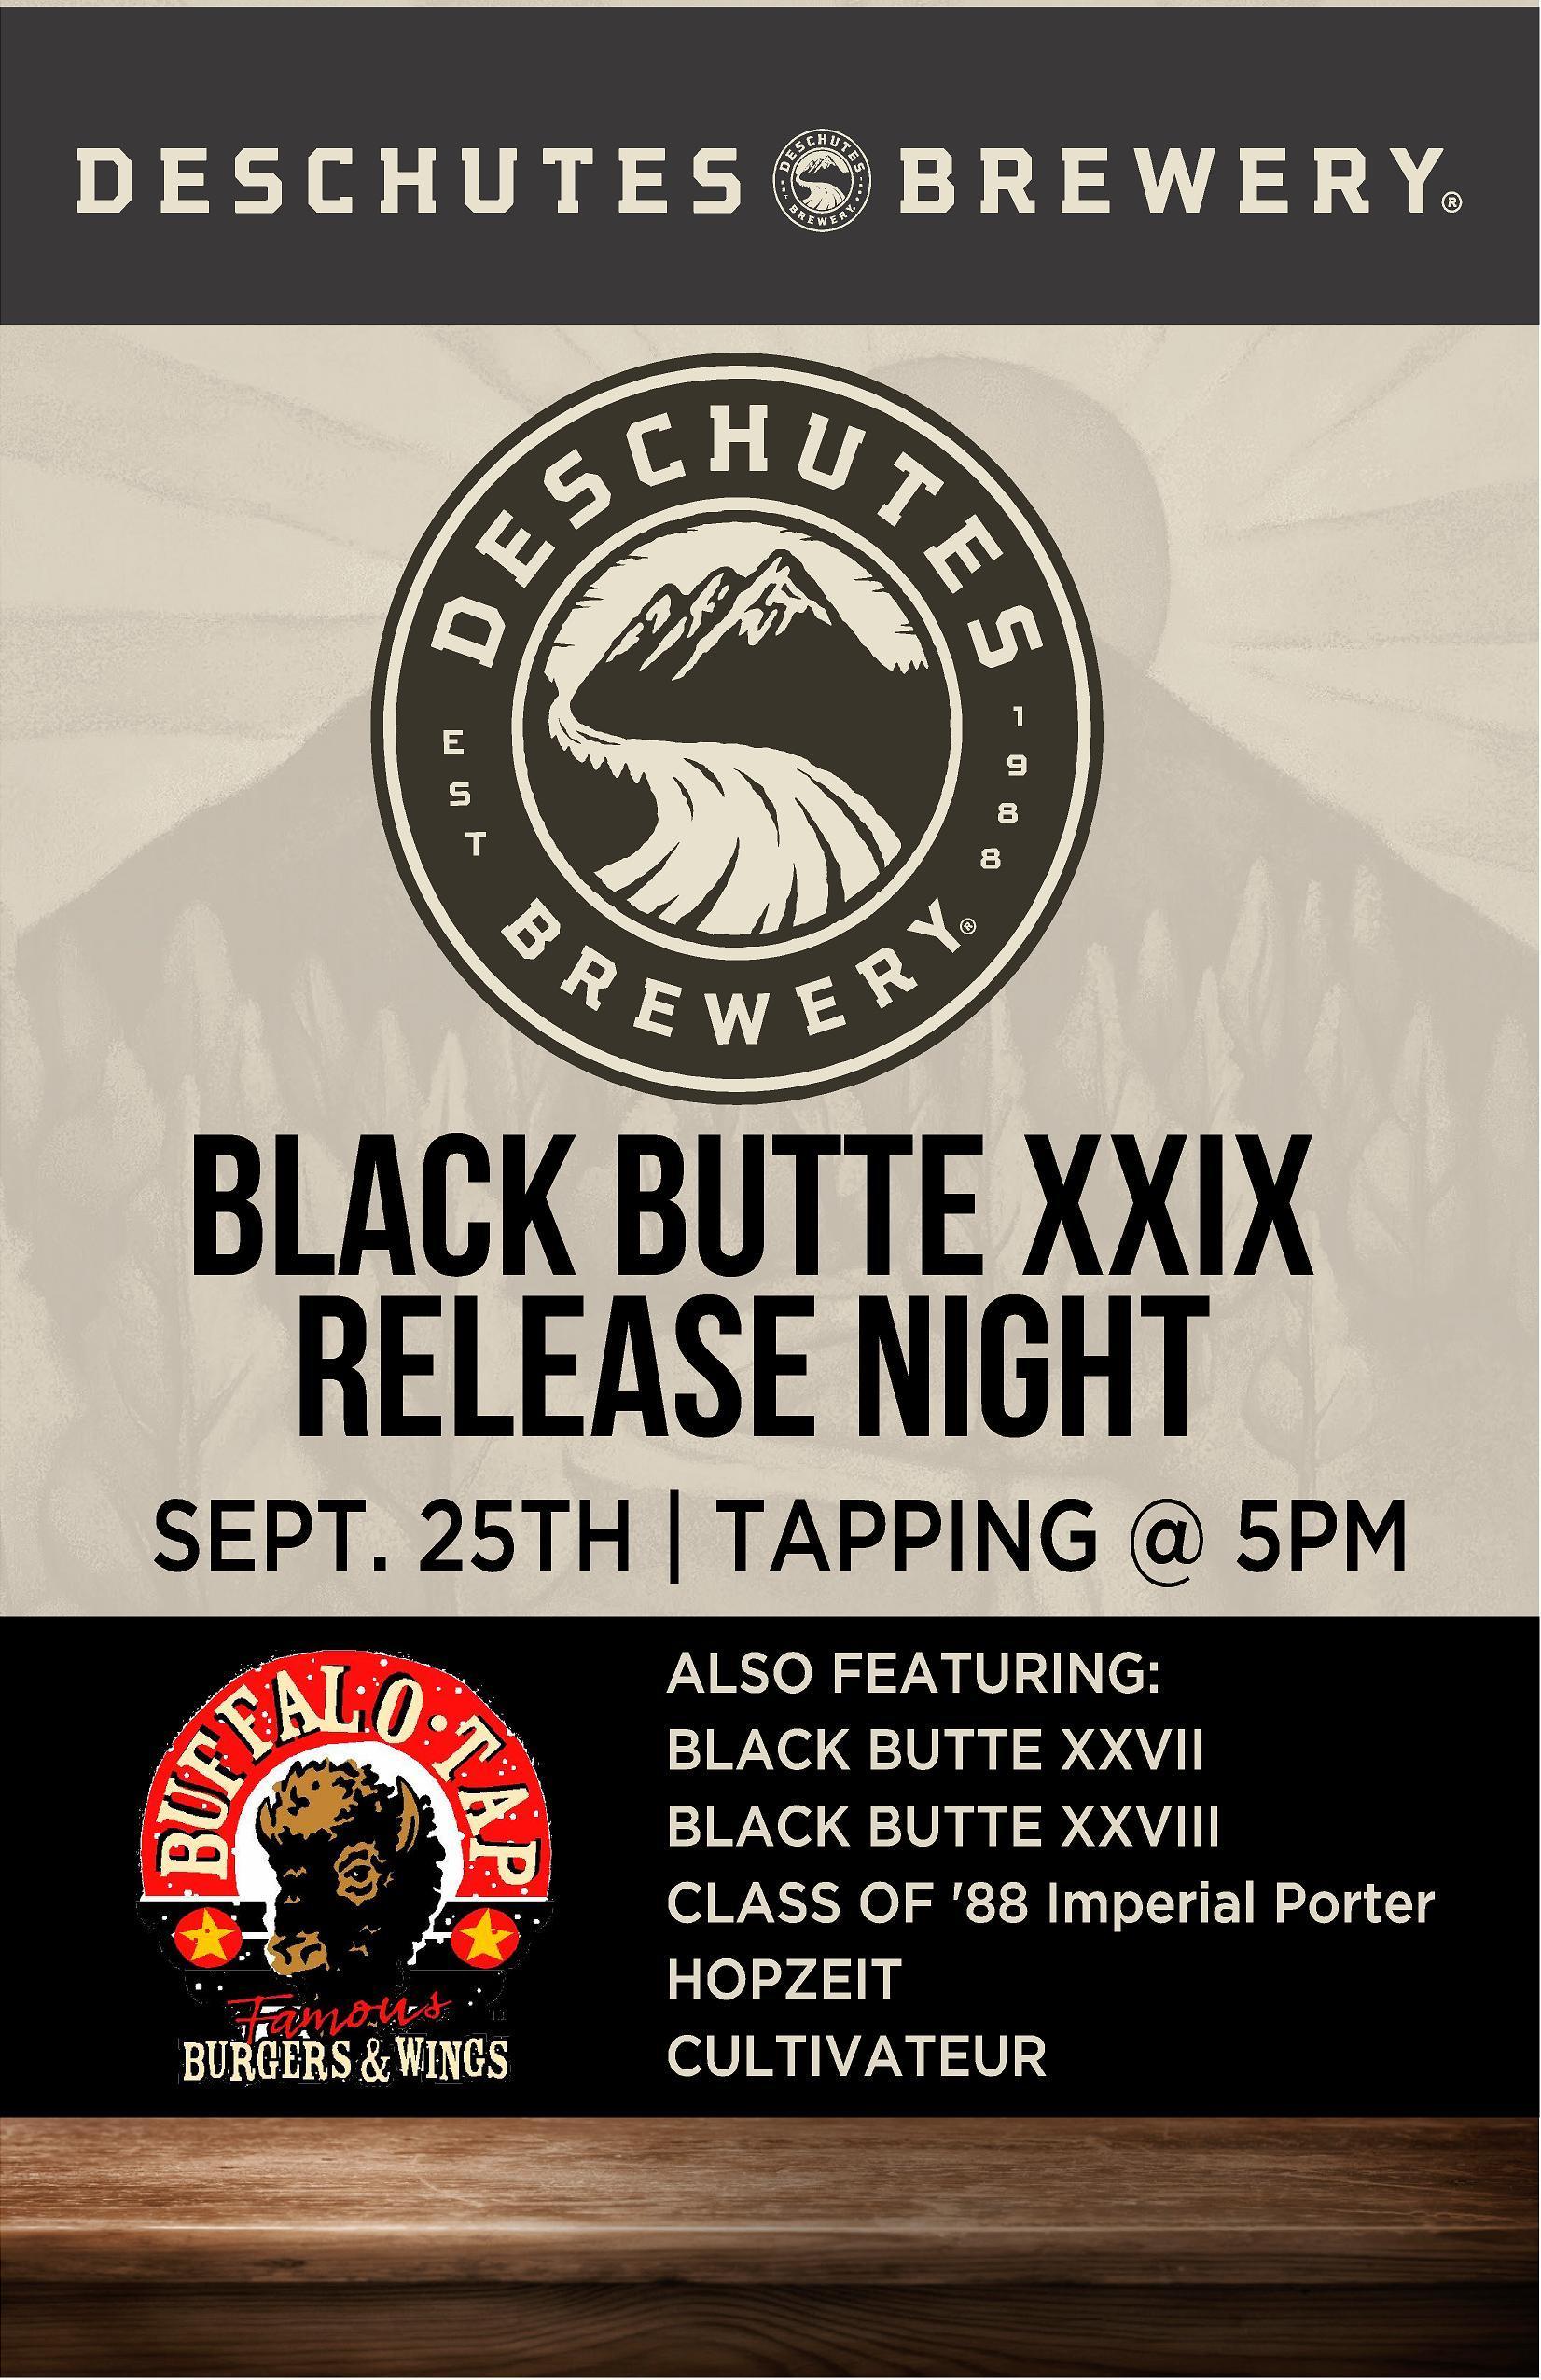 Black Butte Logo - Deschutes Brewery Black Butte XXIX Release